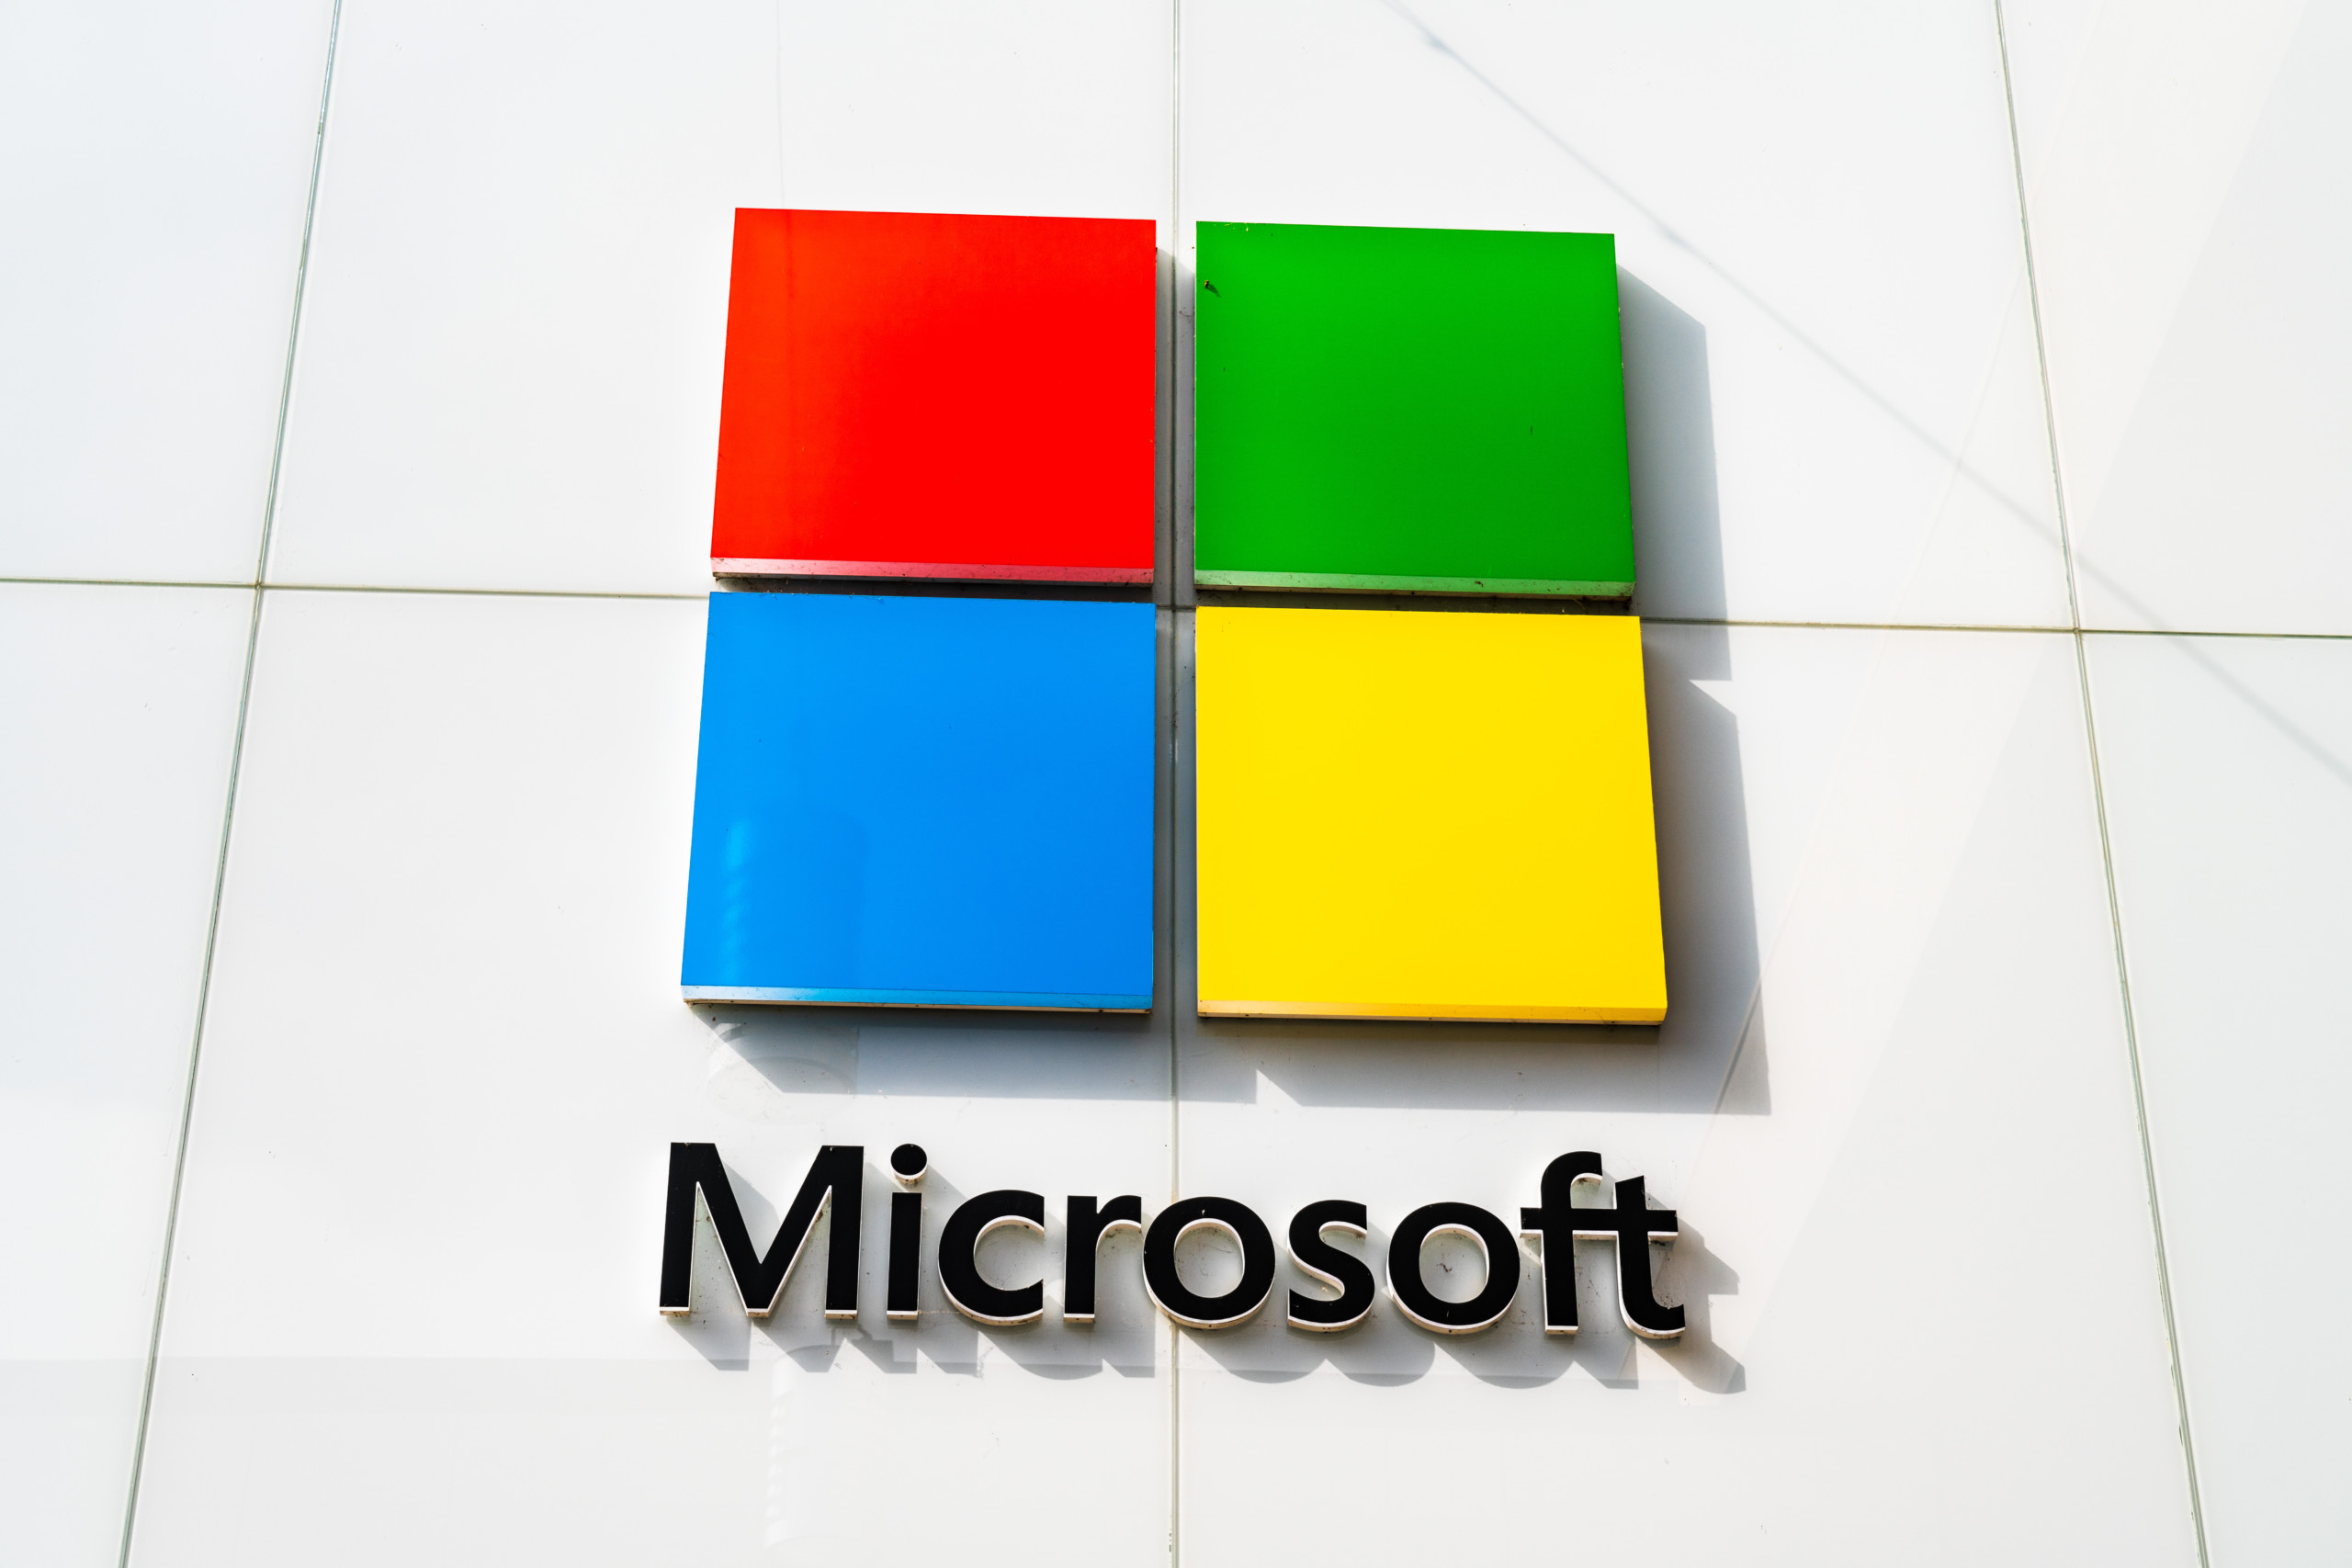 Gerüchte über milliardenschwere Investition von Microsoft in OpenAI - Verhandlungen im Gange